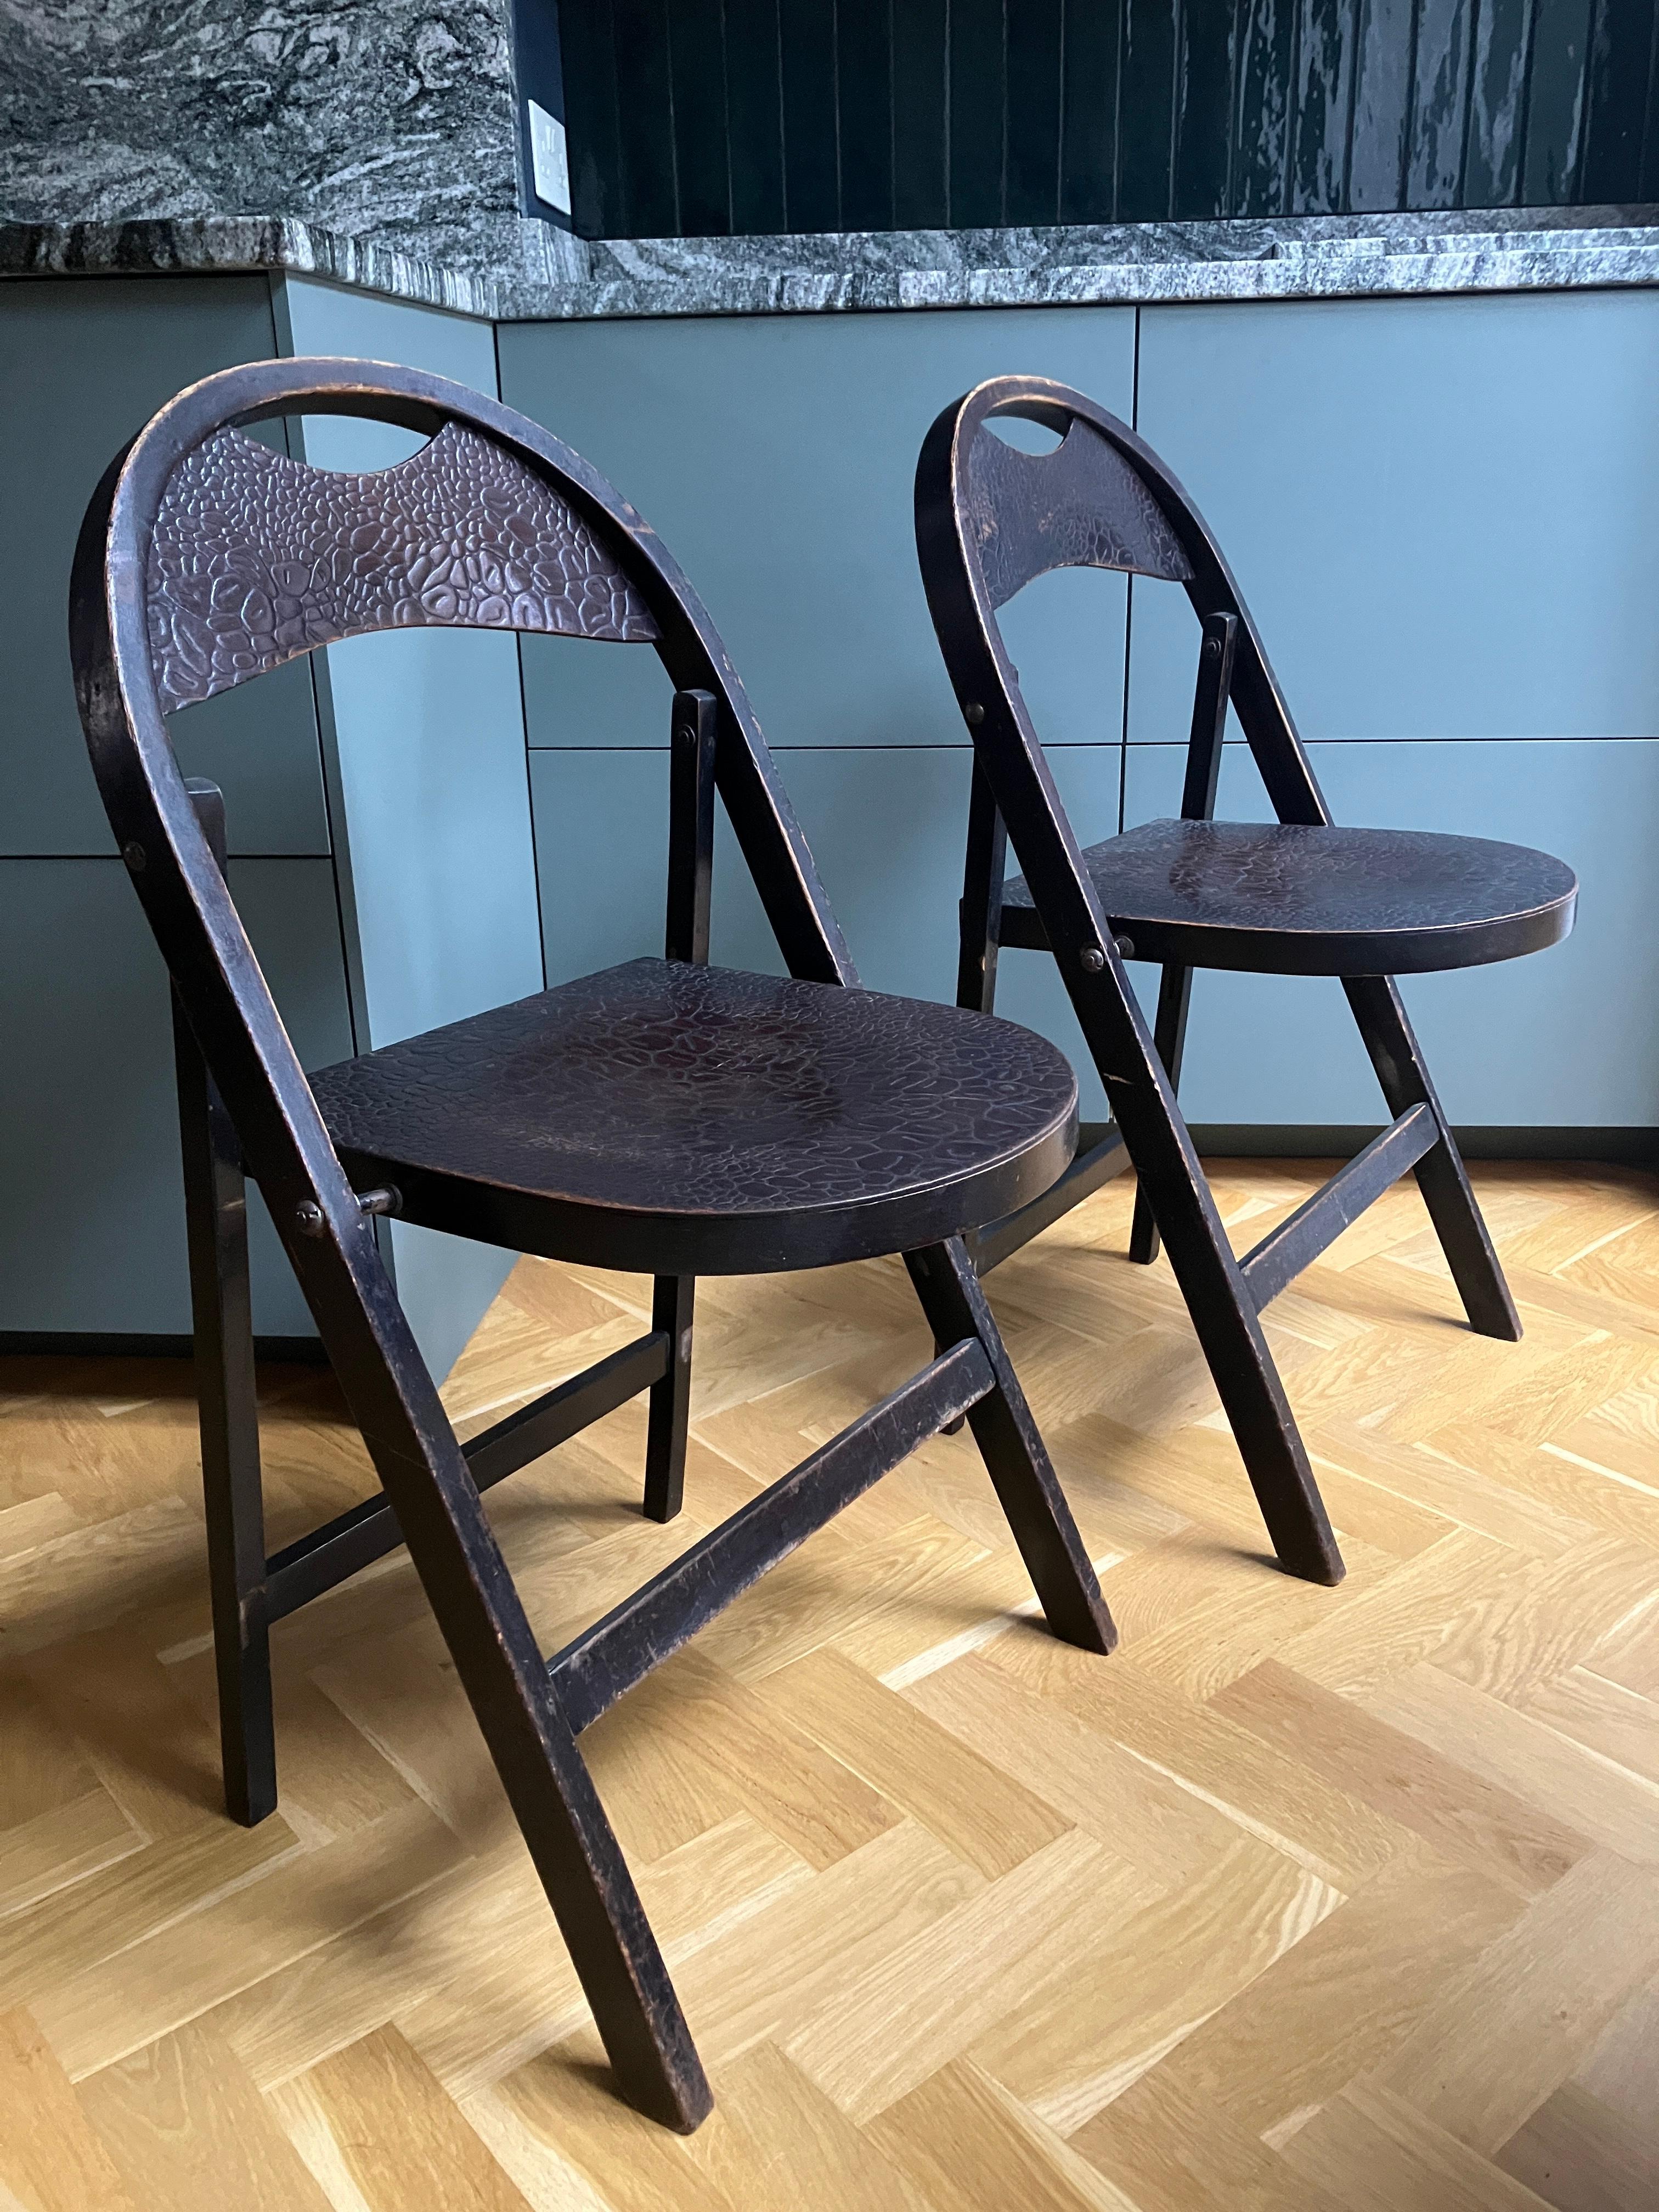 Ein Paar Bauhaus-Bugholz-Krokodilsessel von Thonet. Klappbare Café-Stühle aus Buche und Sperrholz aus den 1930er Jahren mit Sitz und Rückenlehne in Krokodillederprägung in sehr gutem Zustand. Das geprägte Muster entstand, indem das Holz durch